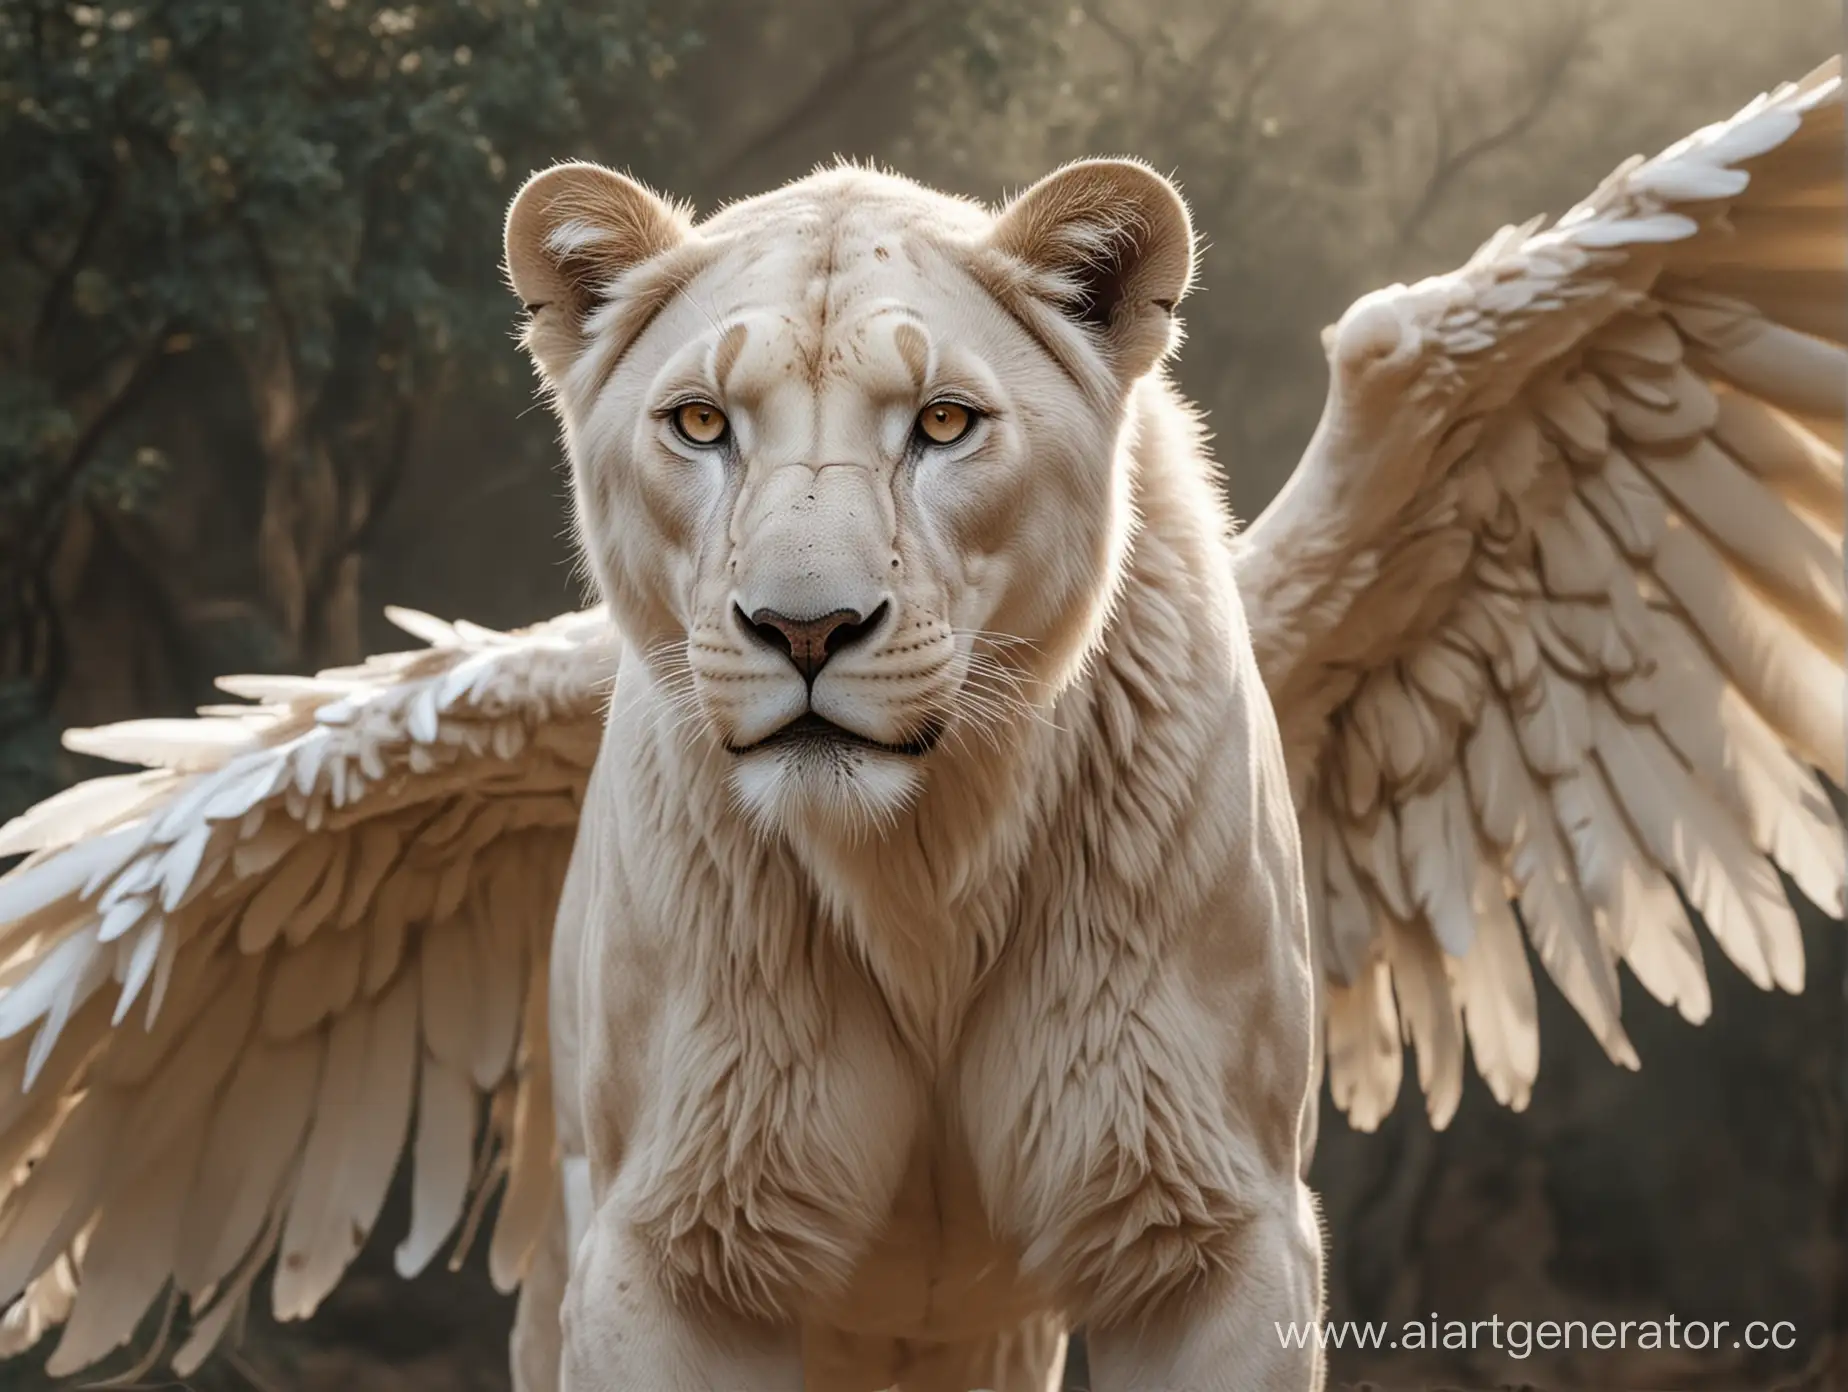 Белая львица со светло-серыми глазами и большими крыльями. По всему телу львицы растут перья. 8K, динамичная поза в полный рост.